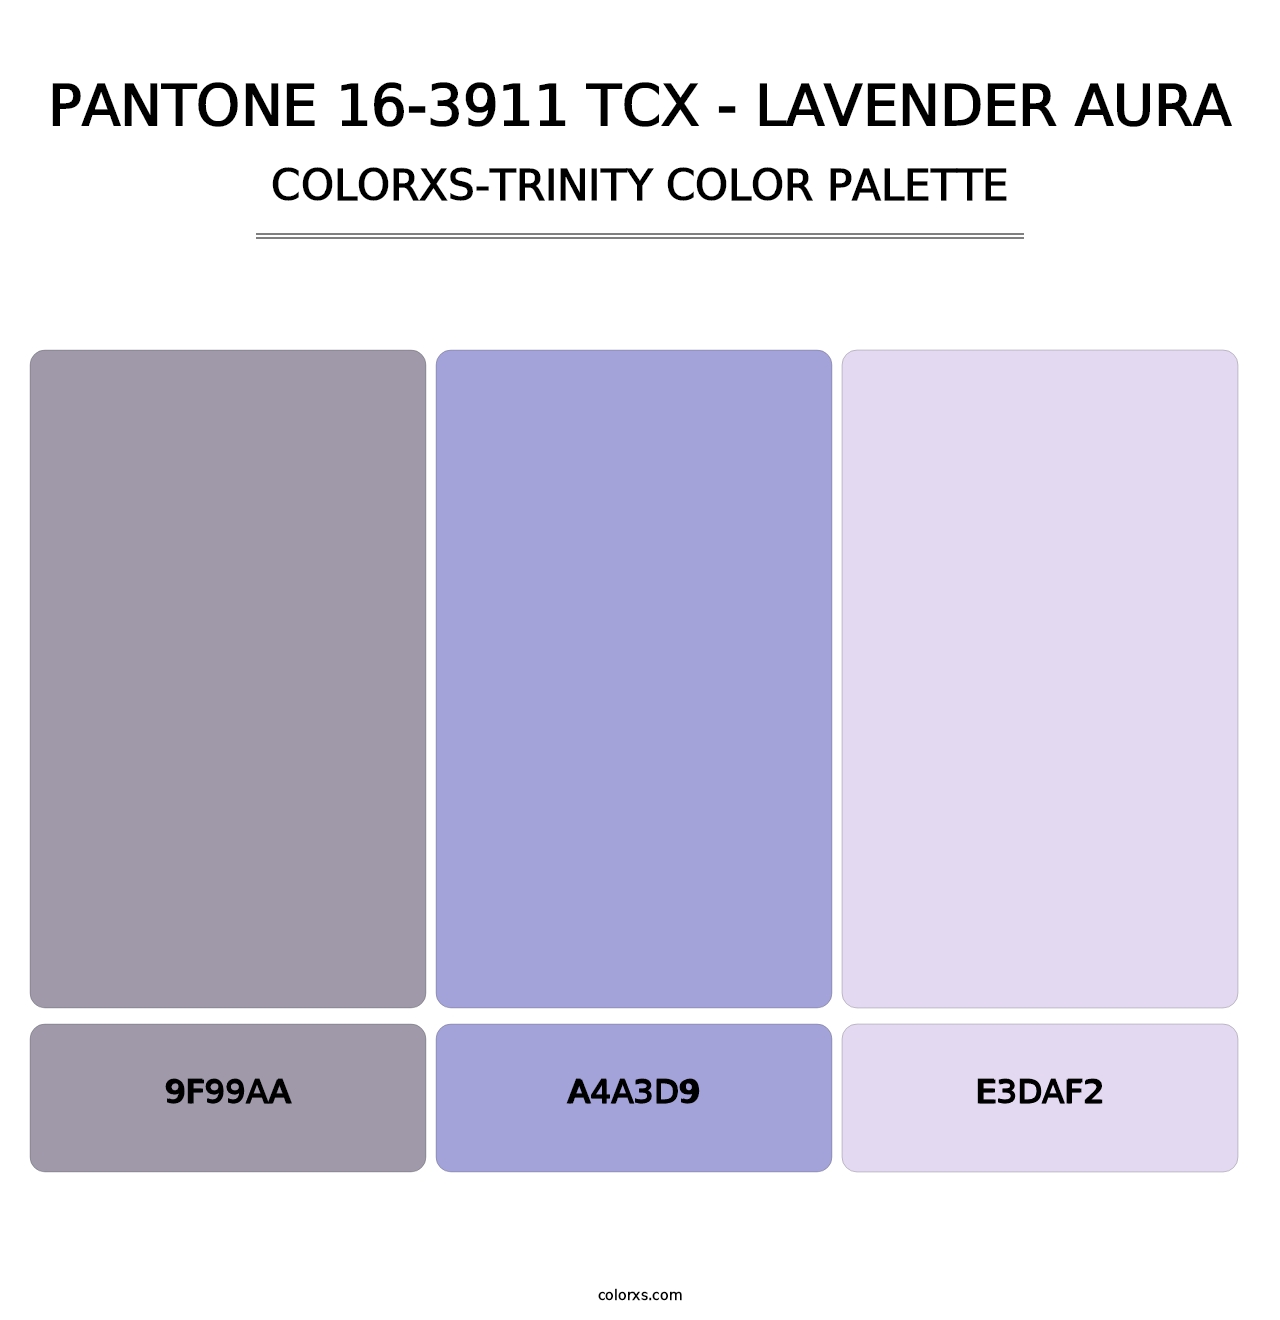 PANTONE 16-3911 TCX - Lavender Aura - Colorxs Trinity Palette